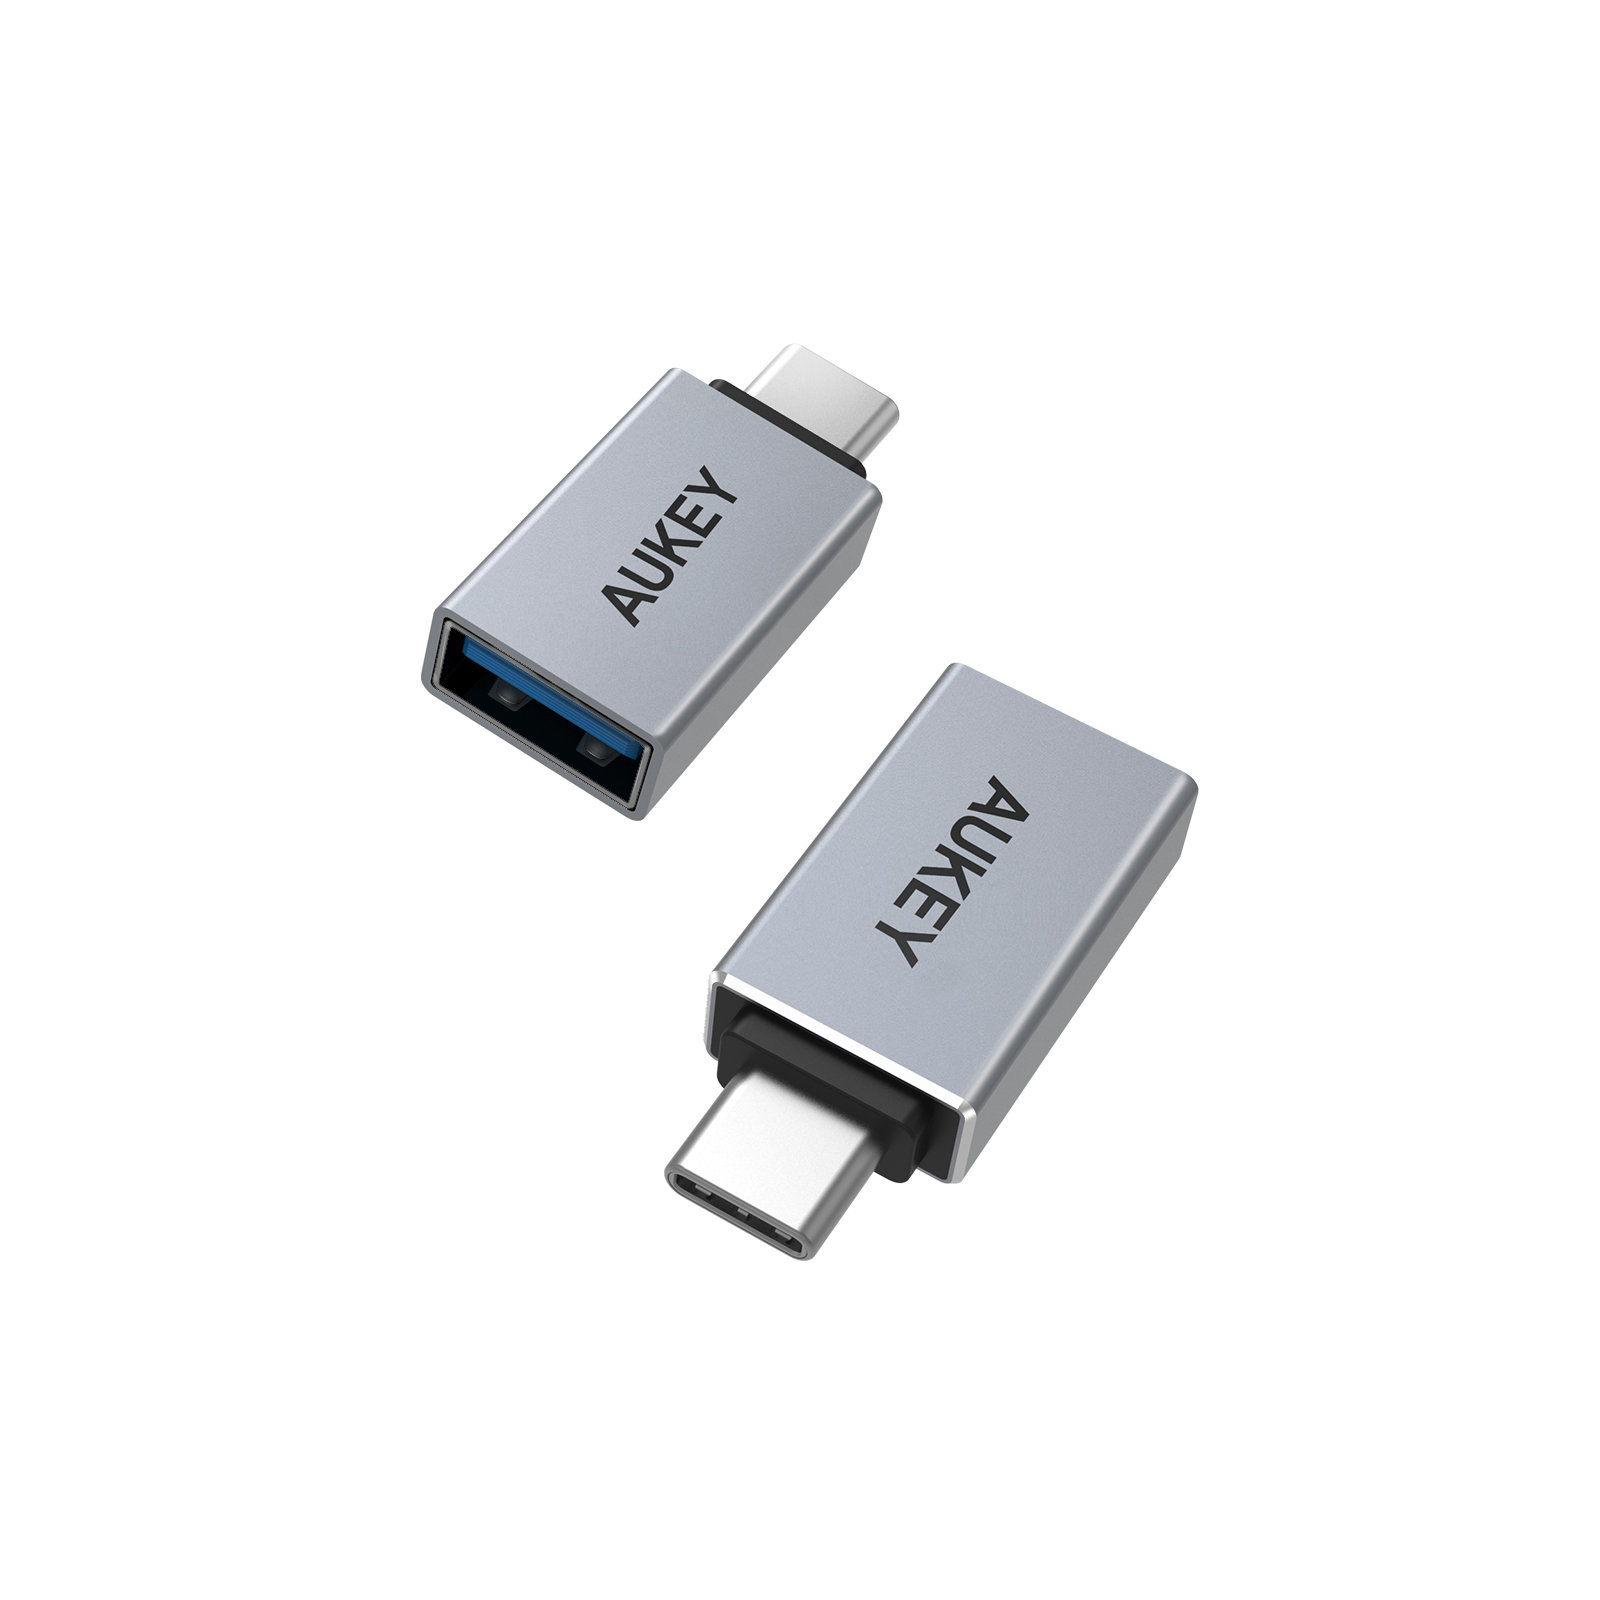 USB 3.0 A to C 変換アダプター(2個セット) CB-A22